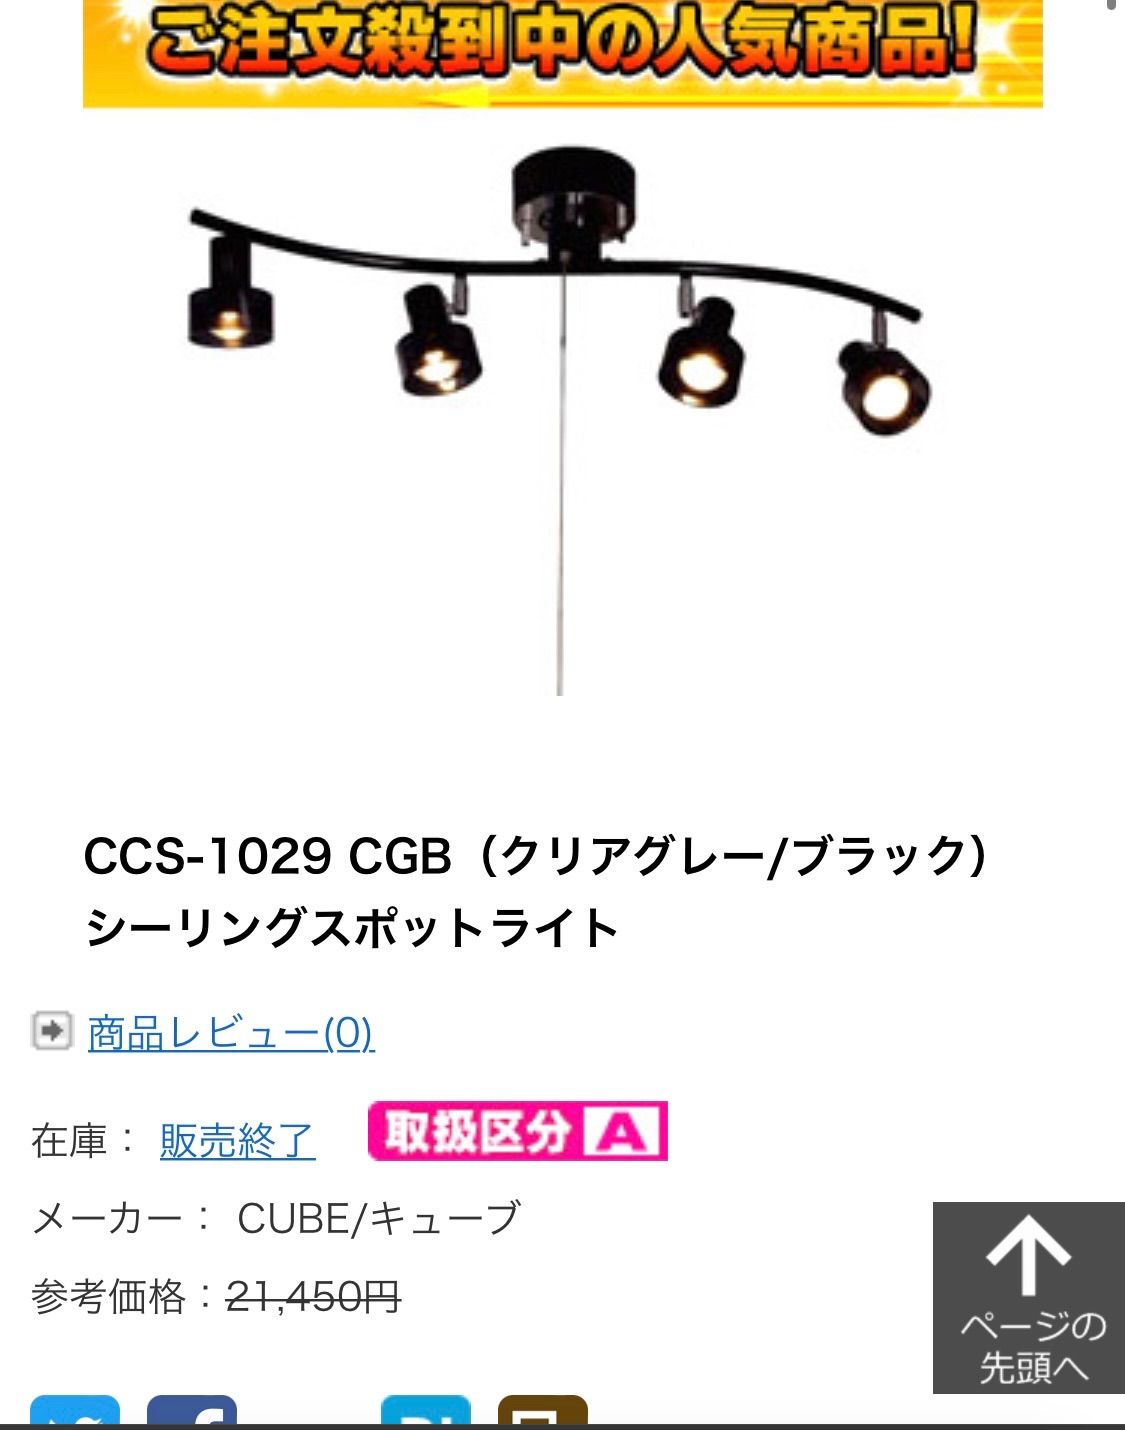 CUBE シーリングスポットライト CCS-1029 （クリアグレー/ブラック